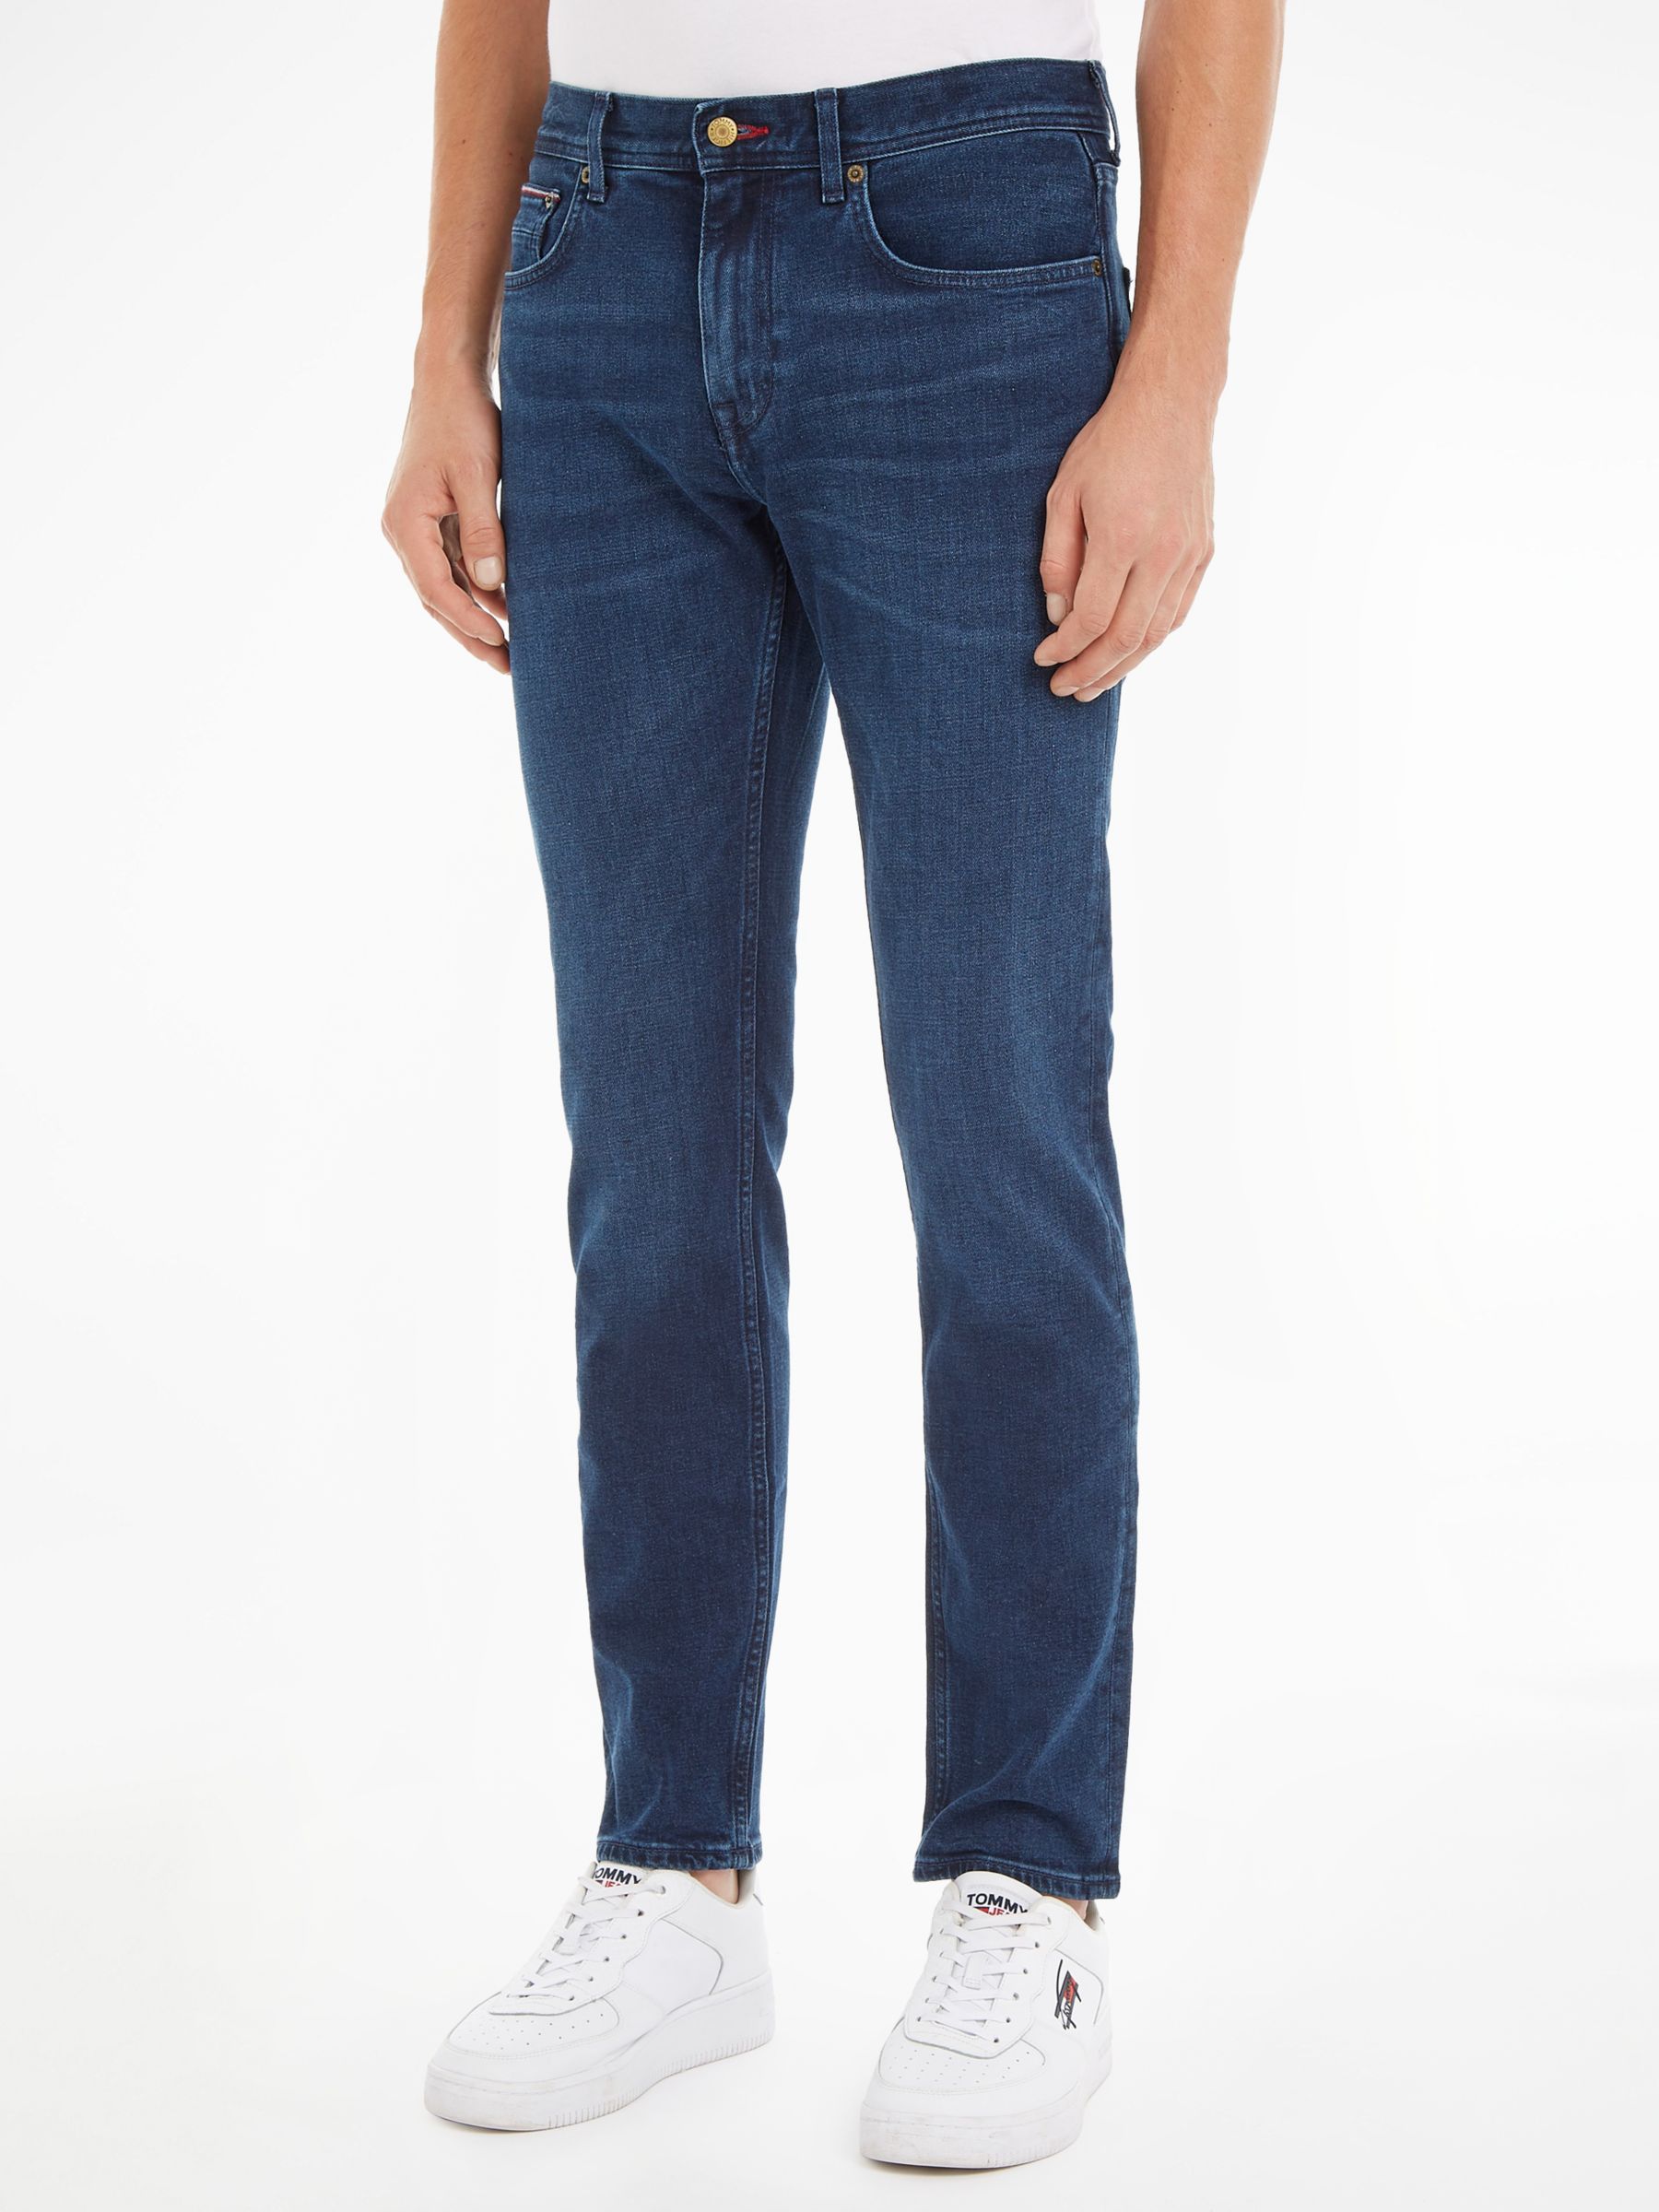 Tommy Hilfiger Denton Straight Jeans, Bridger Indigo, 30S